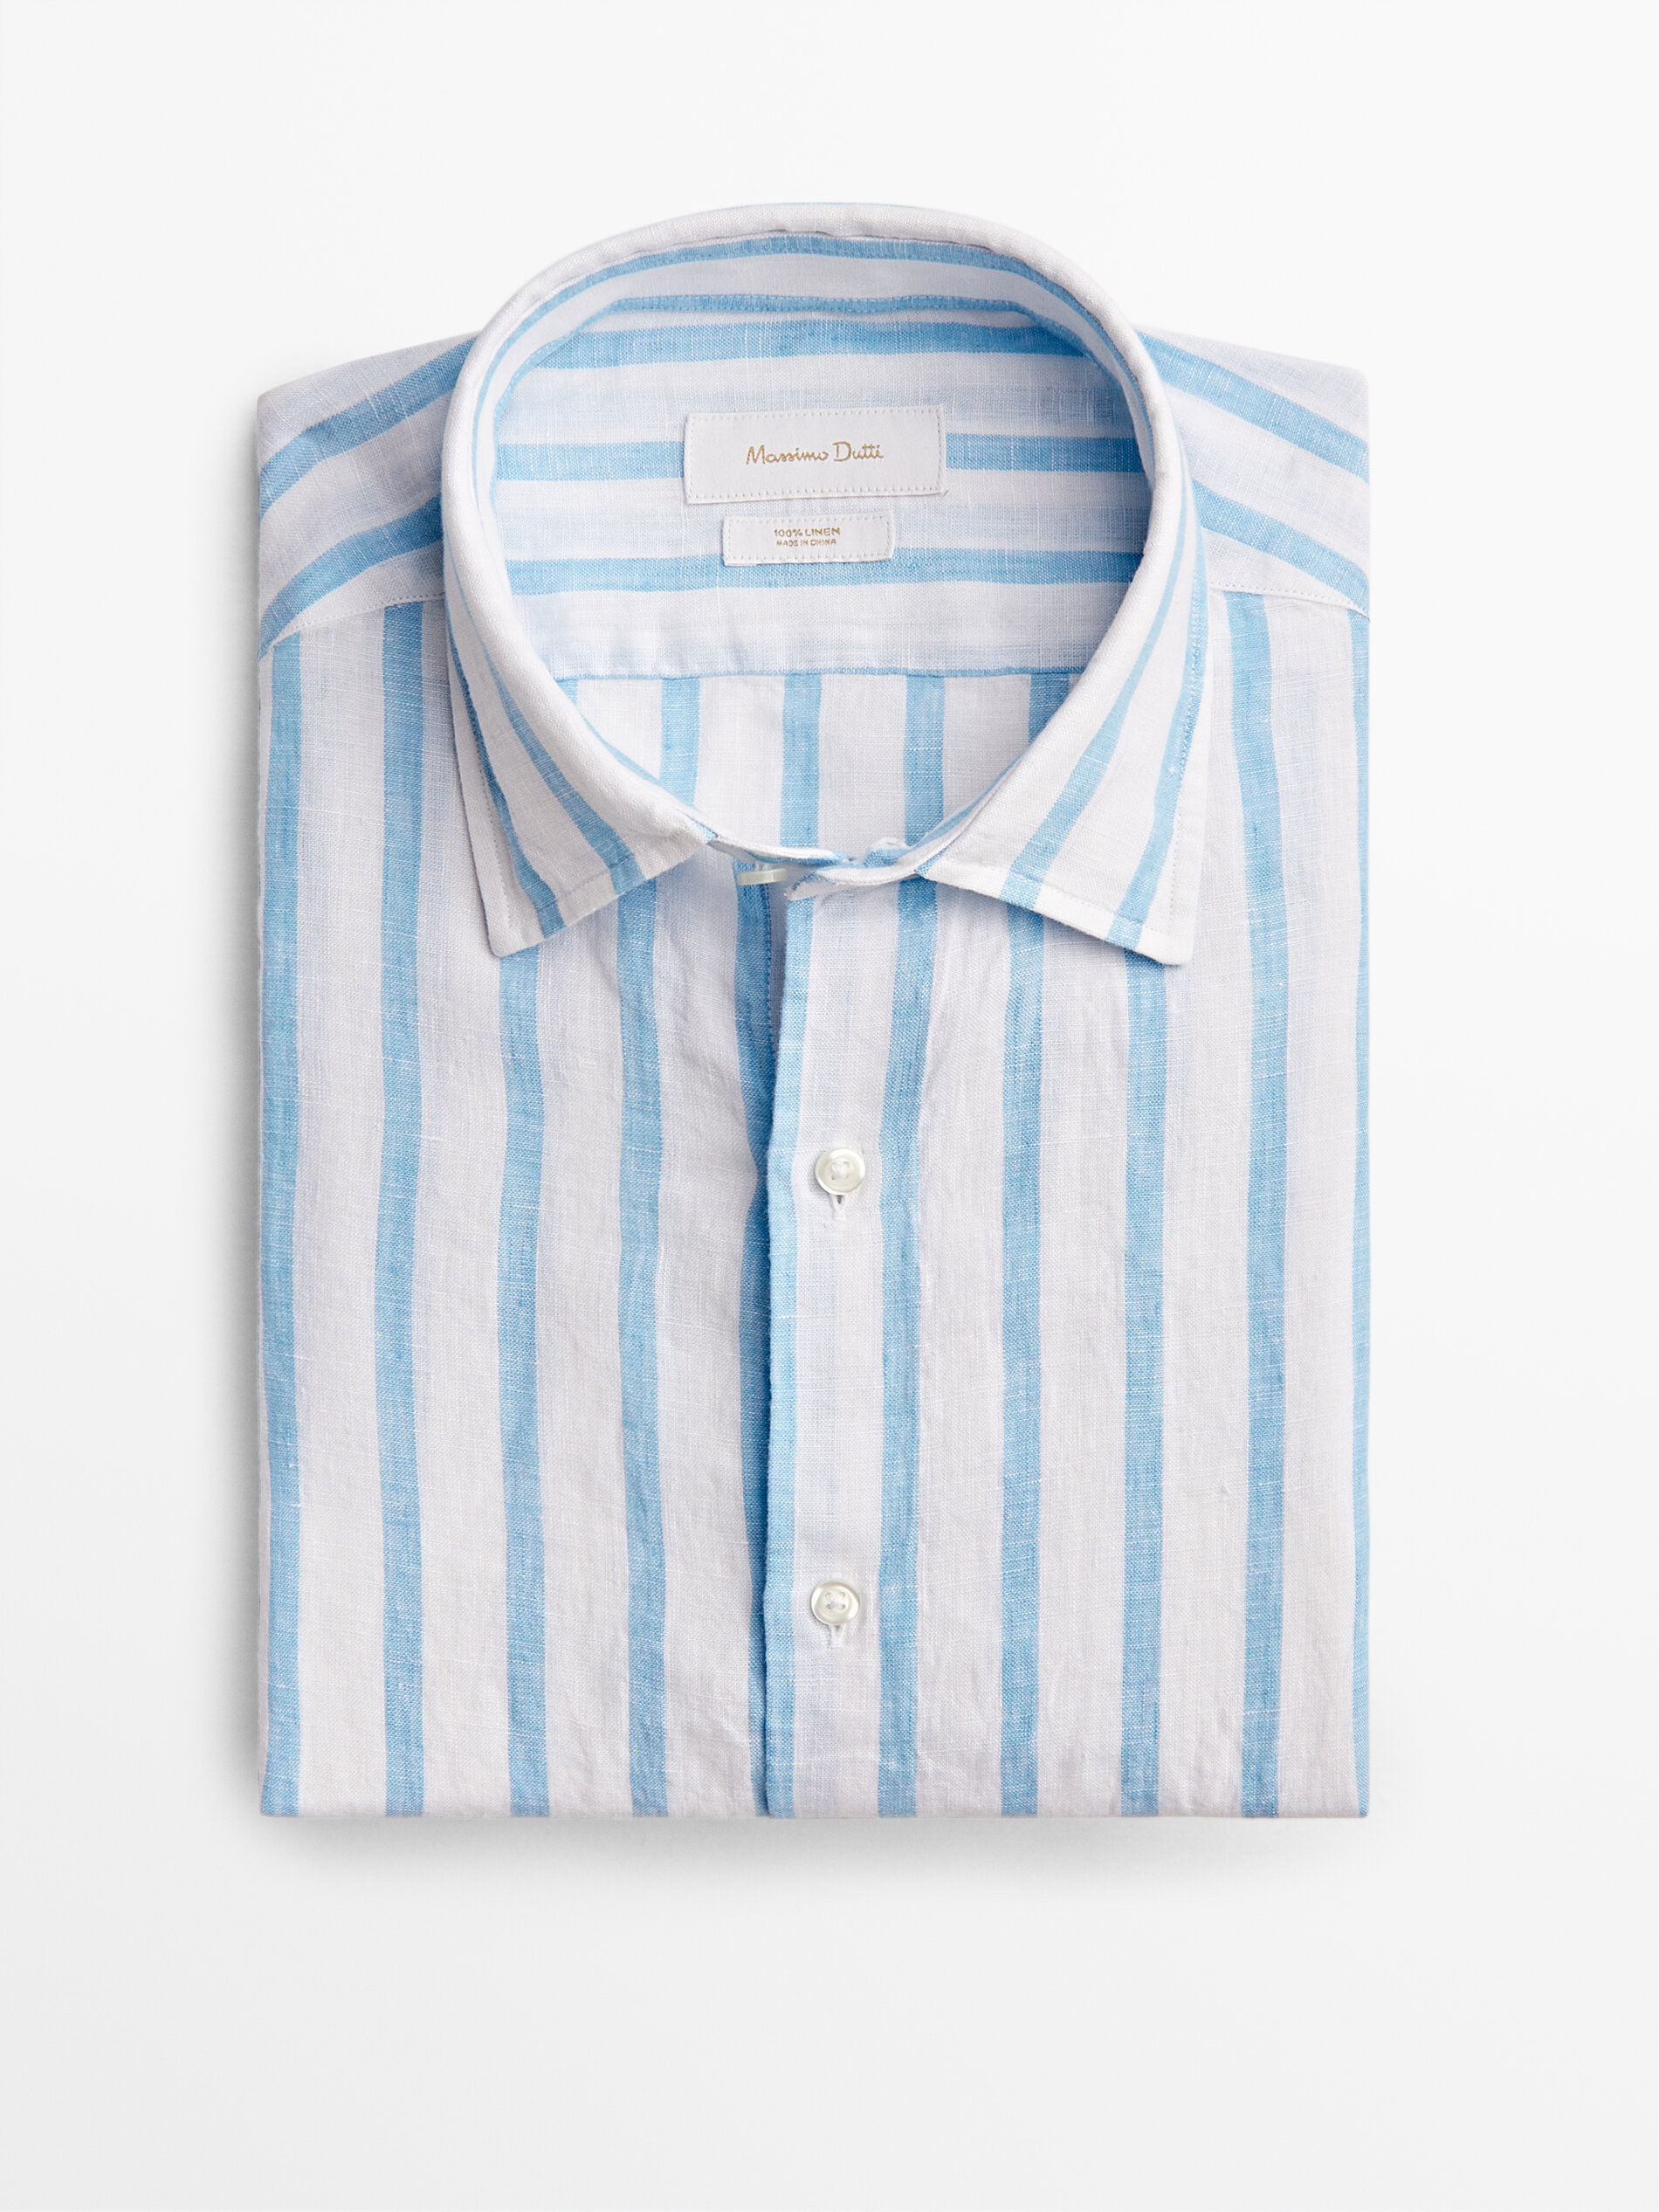 HERREN Hemden & T-Shirts Slim fit Massimo Dutti Hemd Blau M Rabatt 82 % 